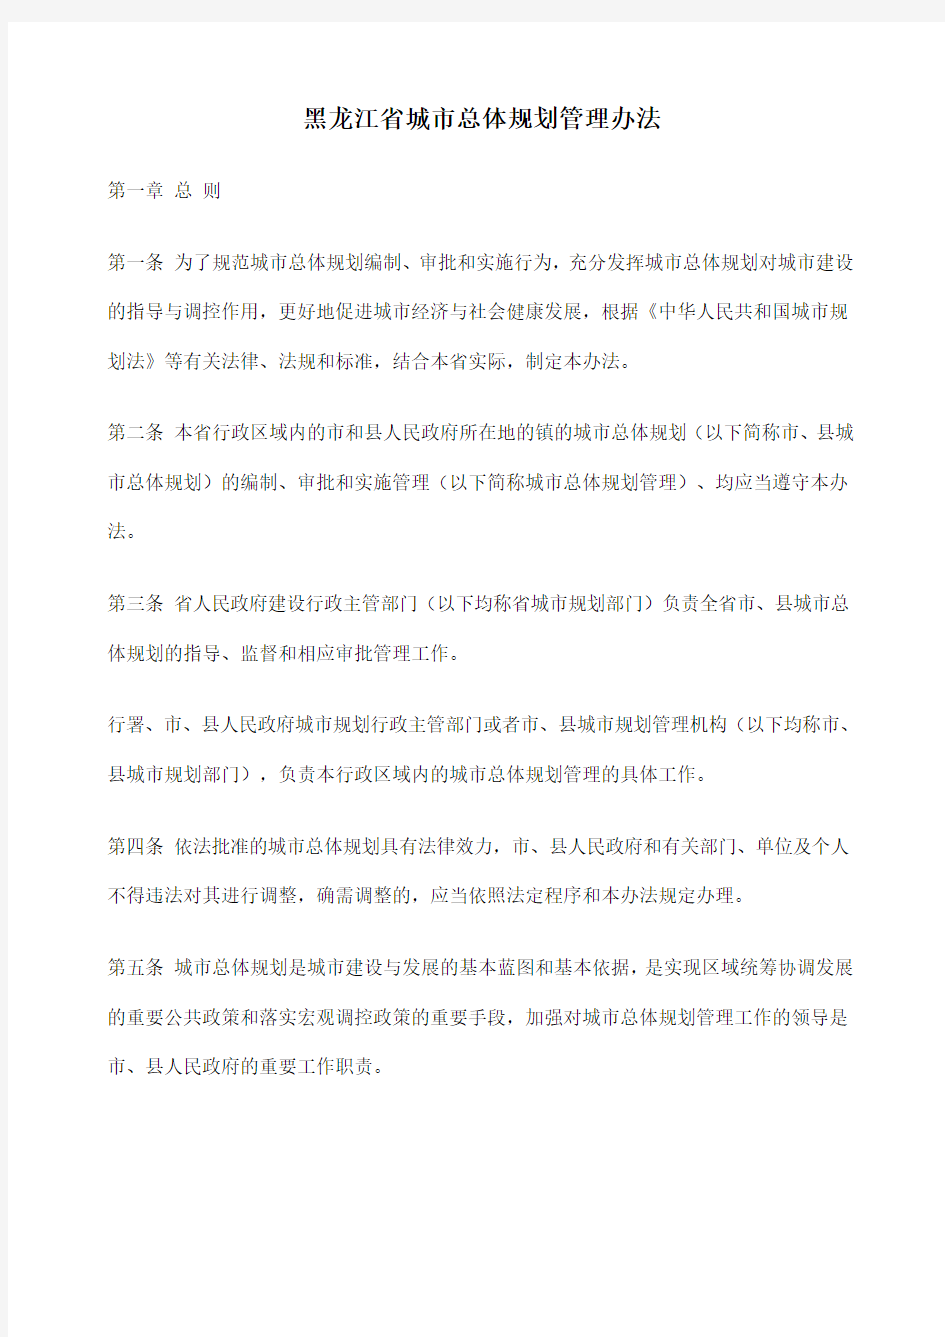 黑龙江省城市总体规划管理办法